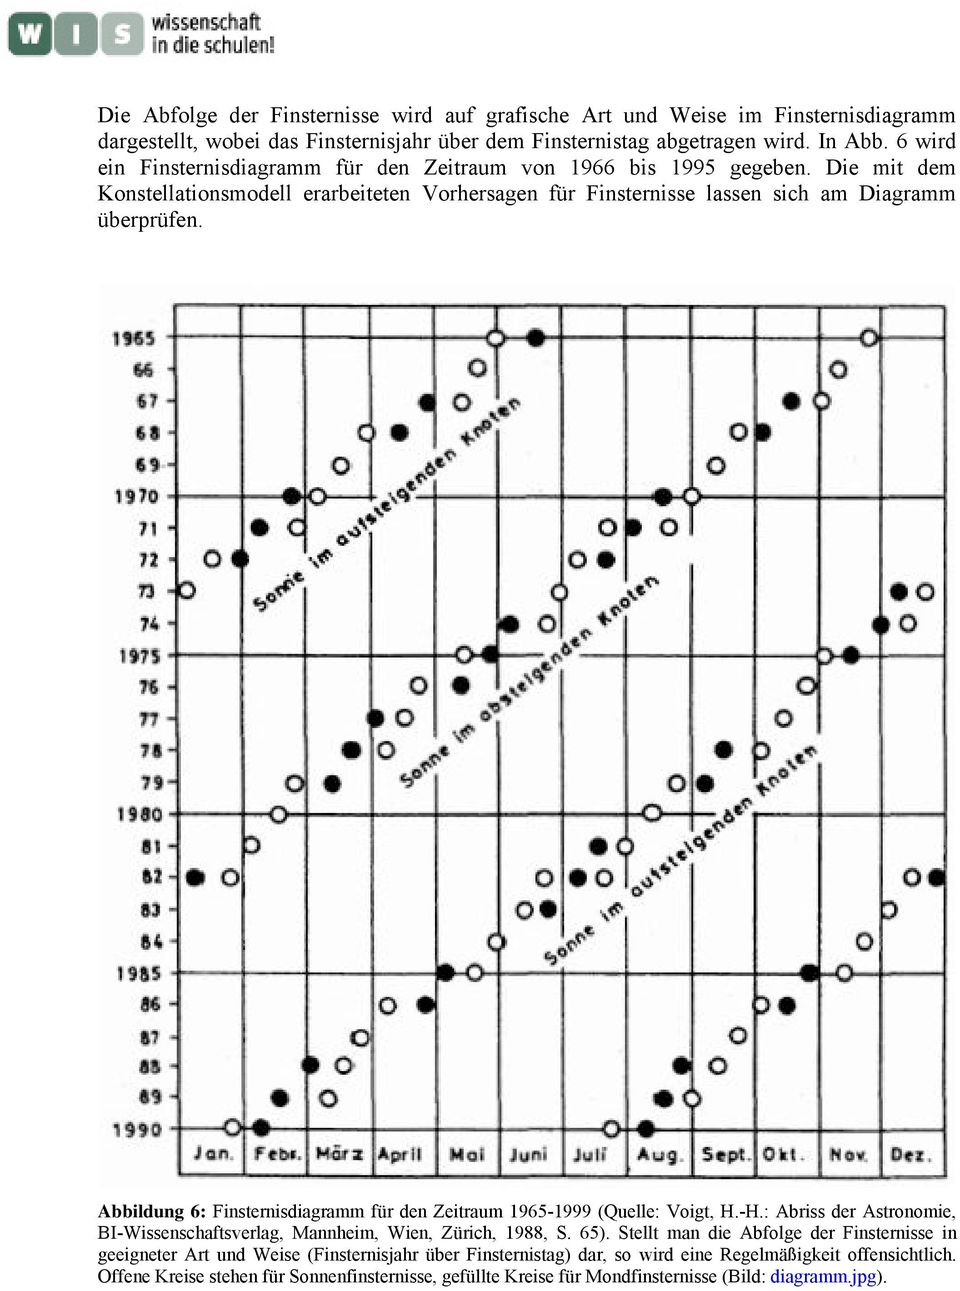 Abbildung 6: Finsternisdiagramm für den Zeitraum 1965-1999 (Quelle: Voigt, H.-H.: Abriss der Astronomie, BI-Wissenschaftsverlag, Mannheim, Wien, Zürich, 1988, S. 65).